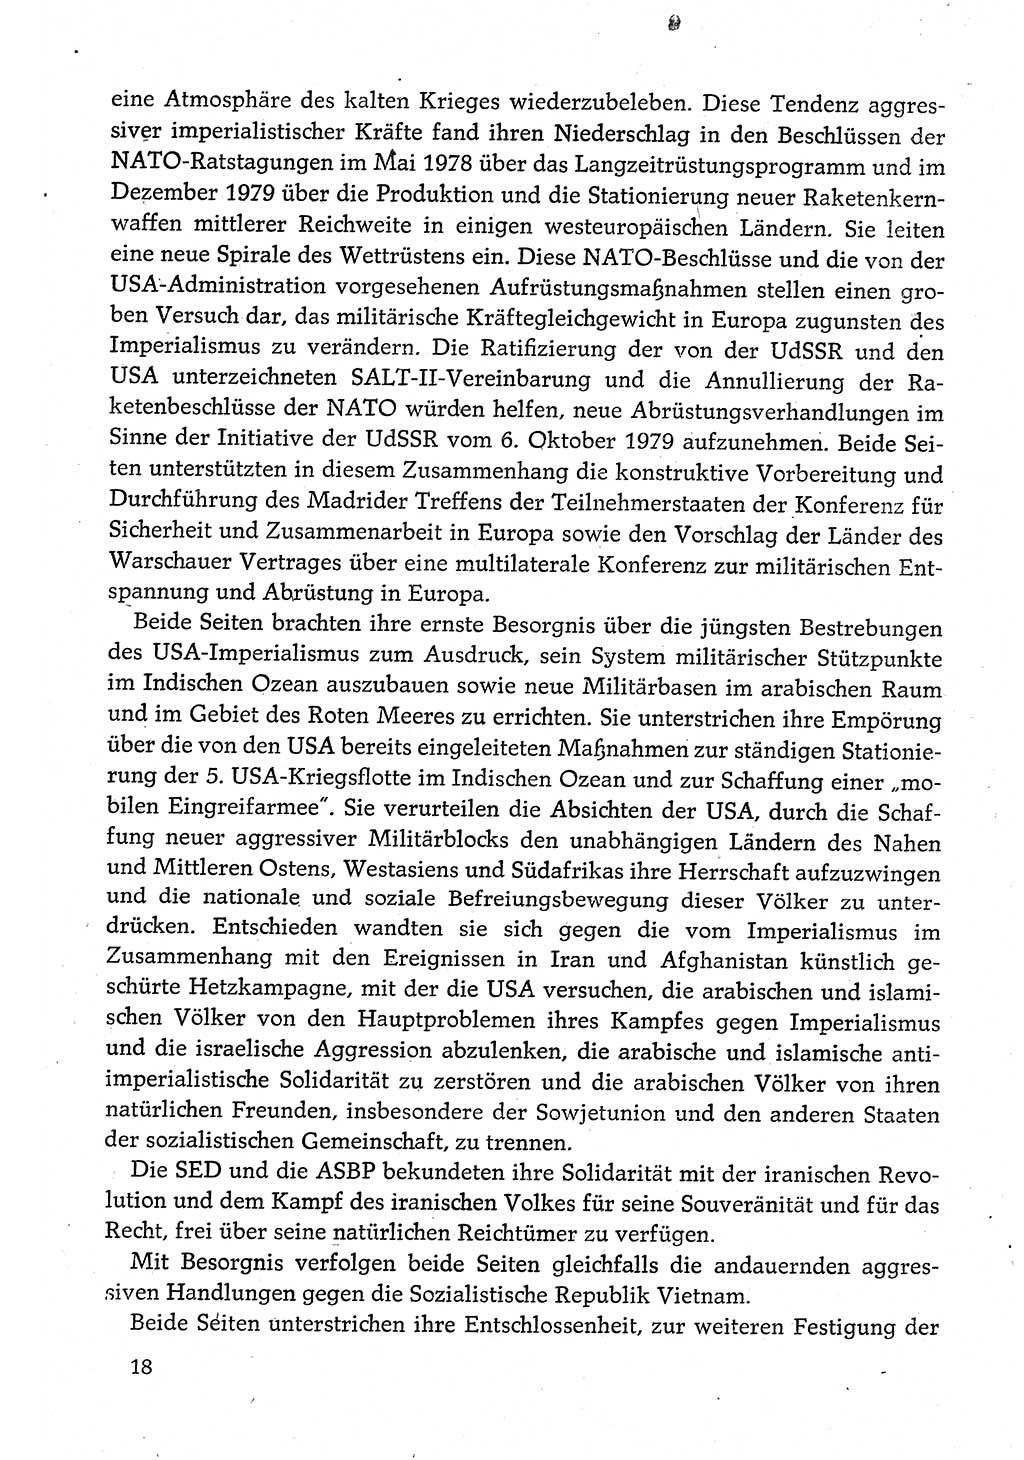 Dokumente der Sozialistischen Einheitspartei Deutschlands (SED) [Deutsche Demokratische Republik (DDR)] 1980-1981, Seite 18 (Dok. SED DDR 1980-1981, S. 18)